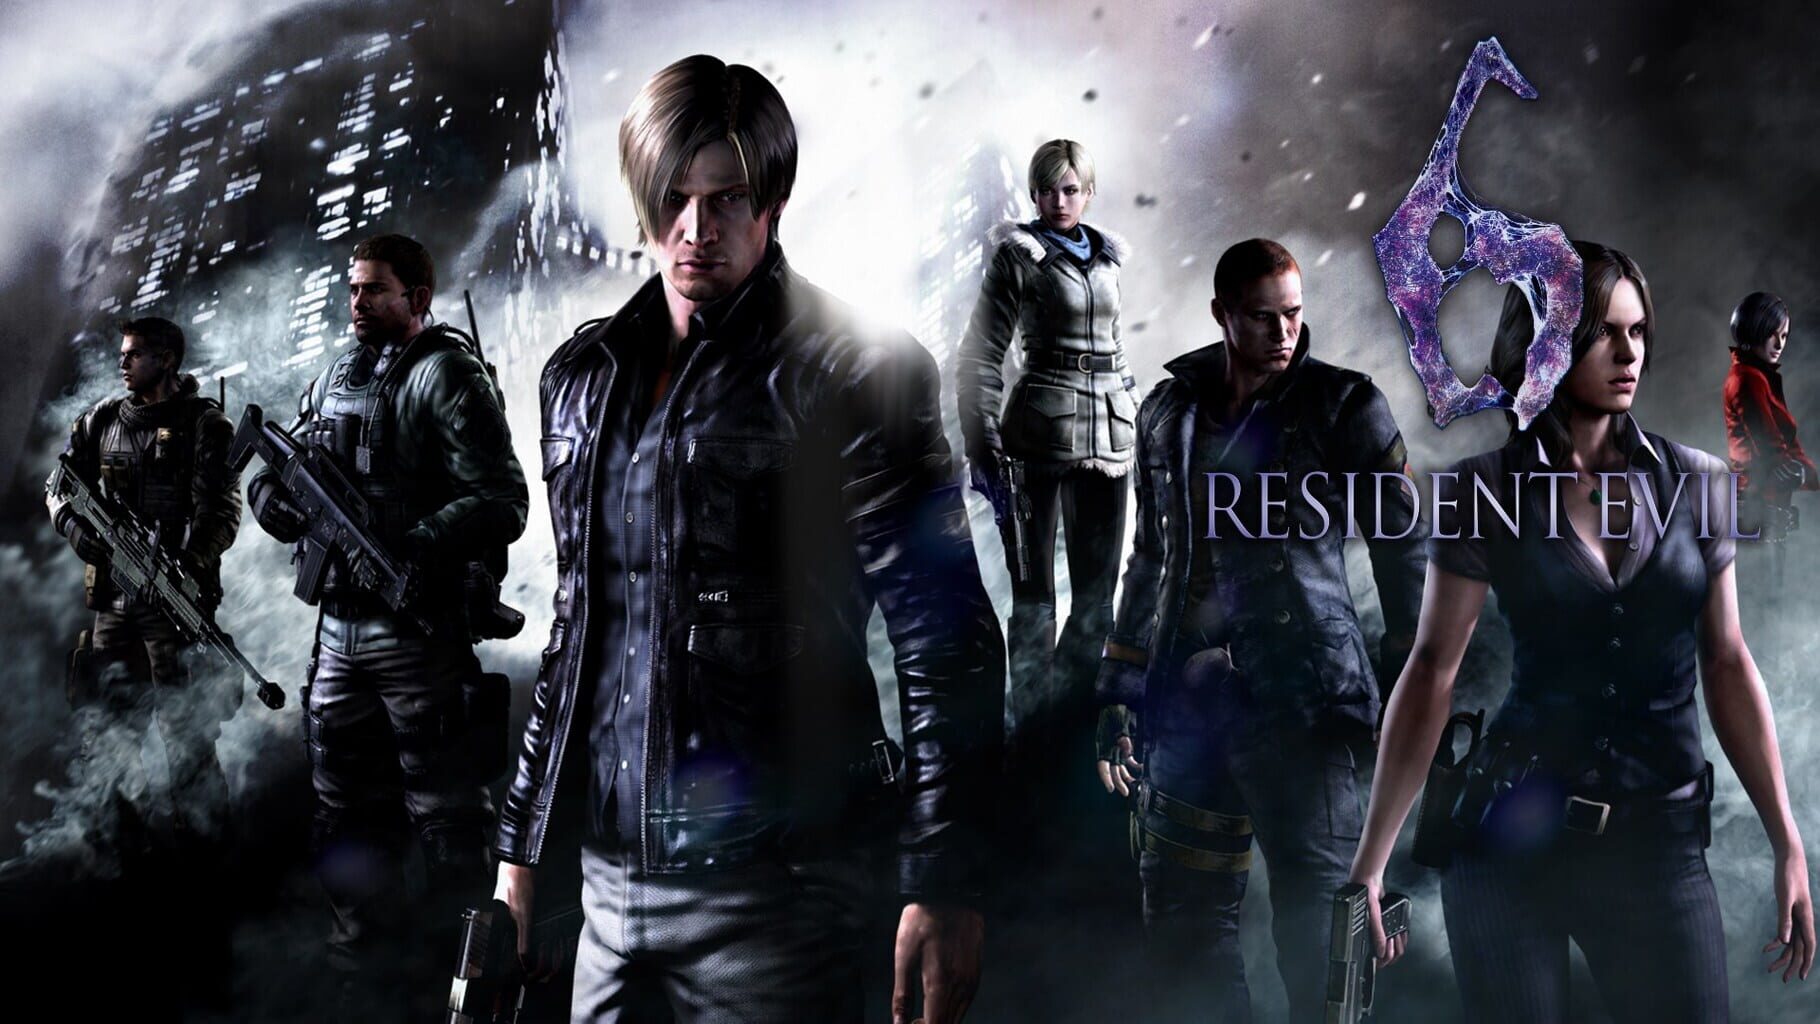 Arte - Resident Evil 6 Remastered